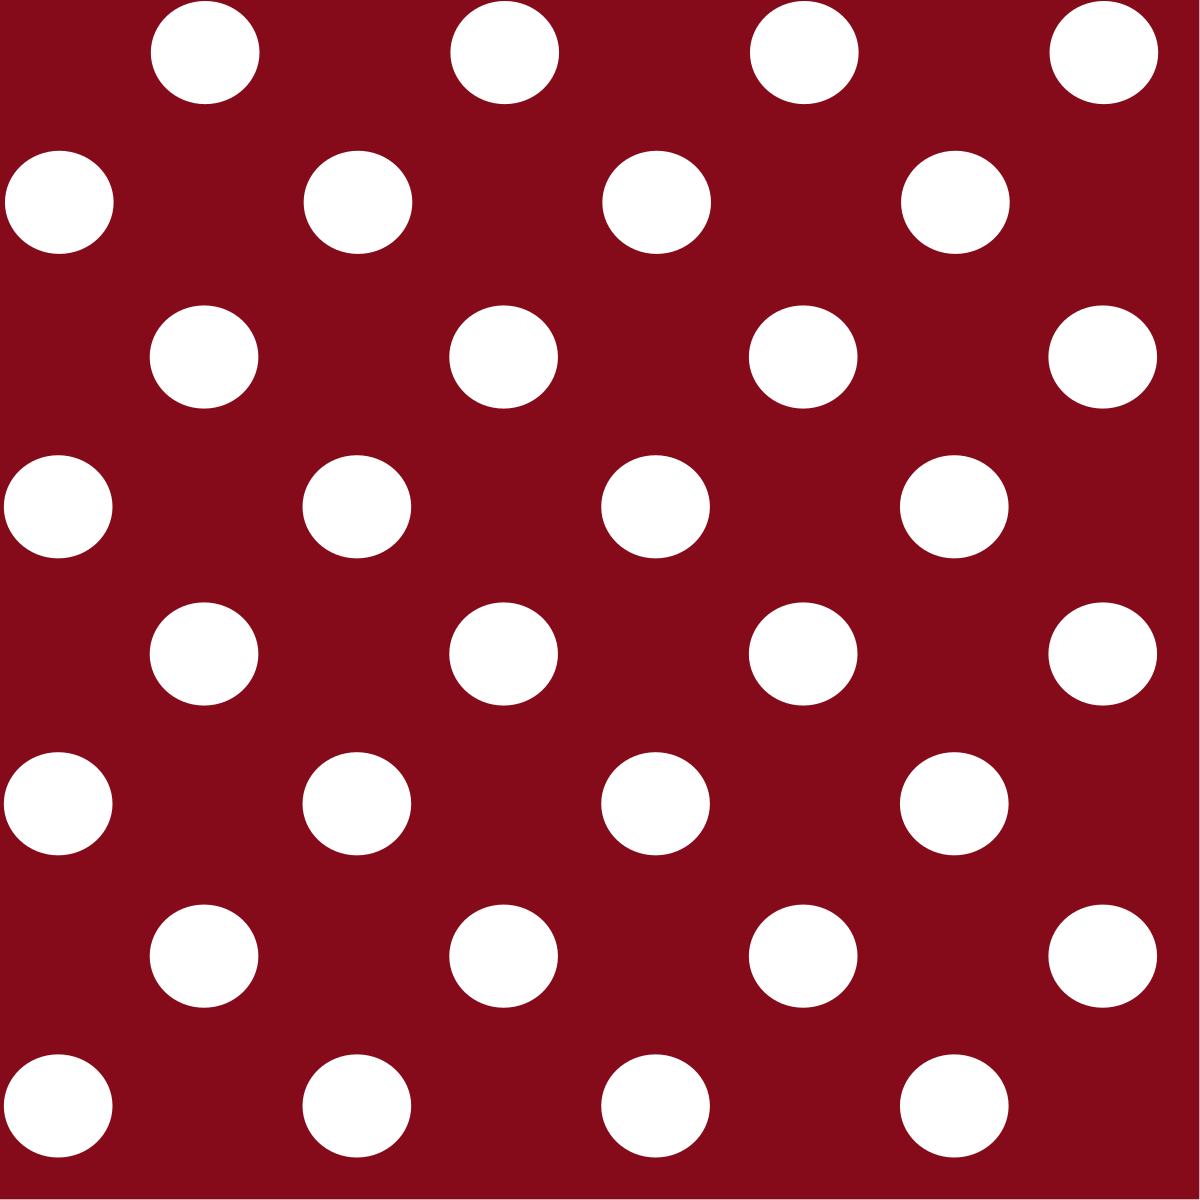 Beanie Punkte viele Farben Polka Dots gepunktet rot schwarz weiß blau grün grau 